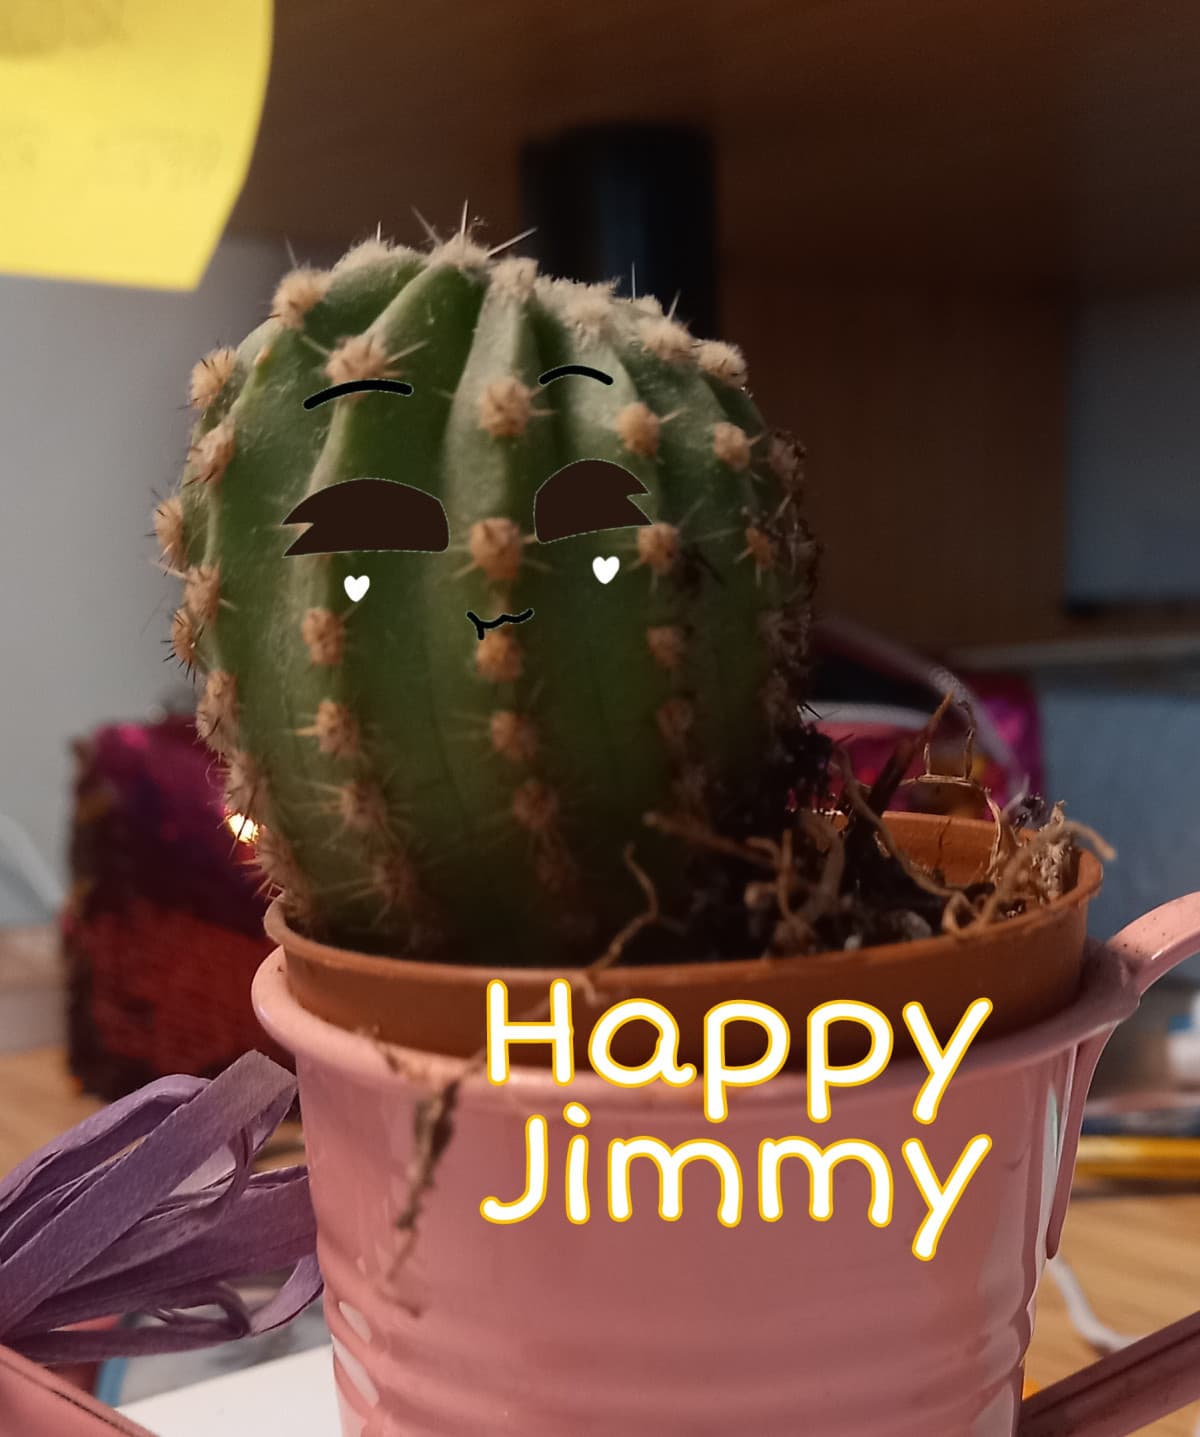 Jimmy felice